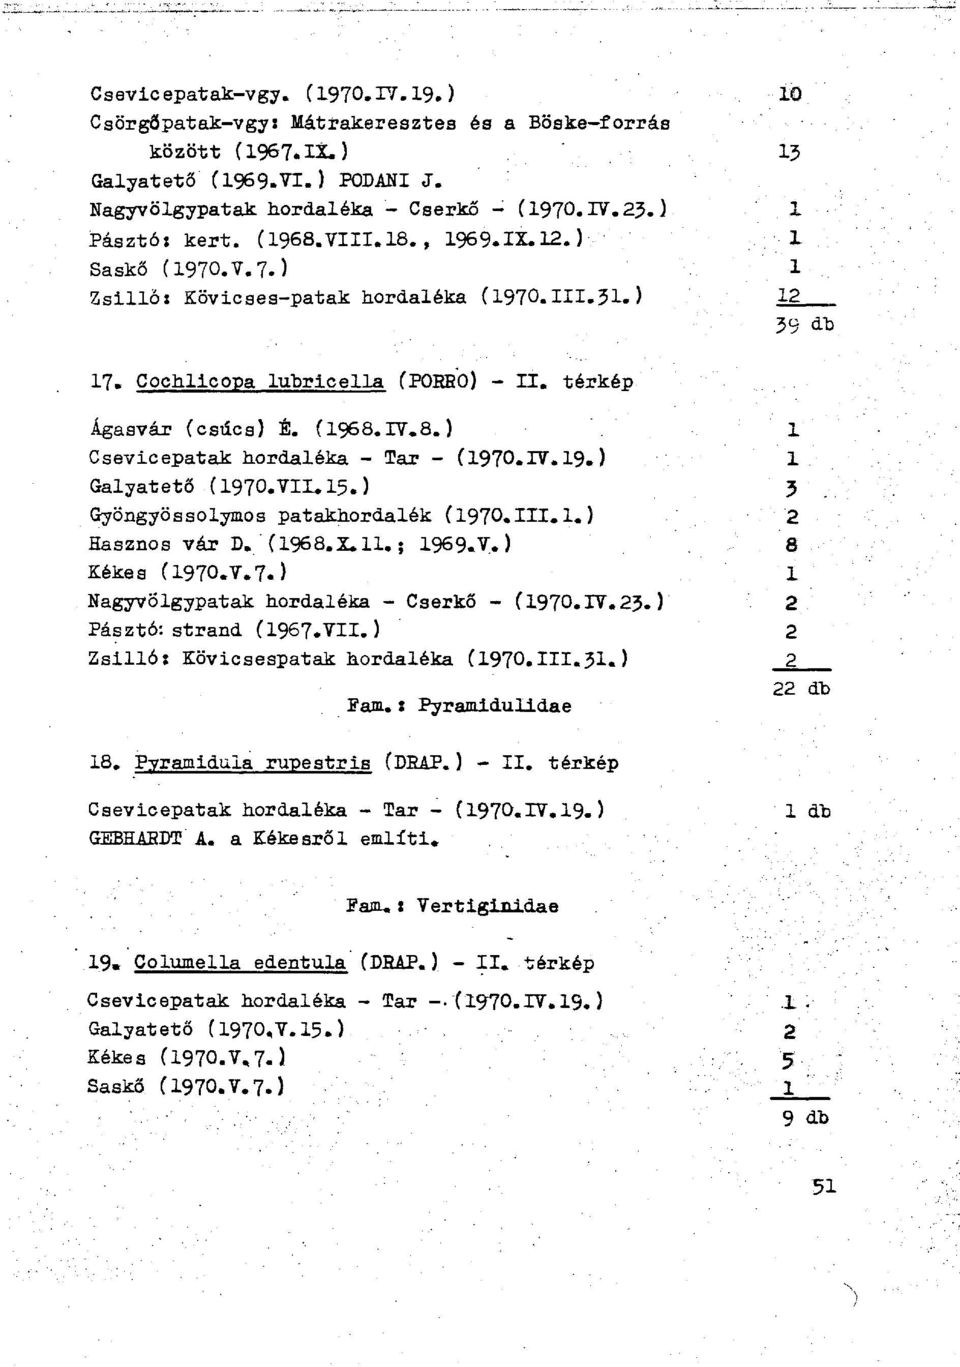 IV.19.) Galyatető (1970.VII.15.) Gyöngyössólymos patakhordalék (1970.III.1.} Hasznos vár D. ( 1968.X. 11. ; 1969.V. ) Kékes (1970.V.7.Î Nagyvölgypatak hordaléka - Cserkő - (1970.IV.23.